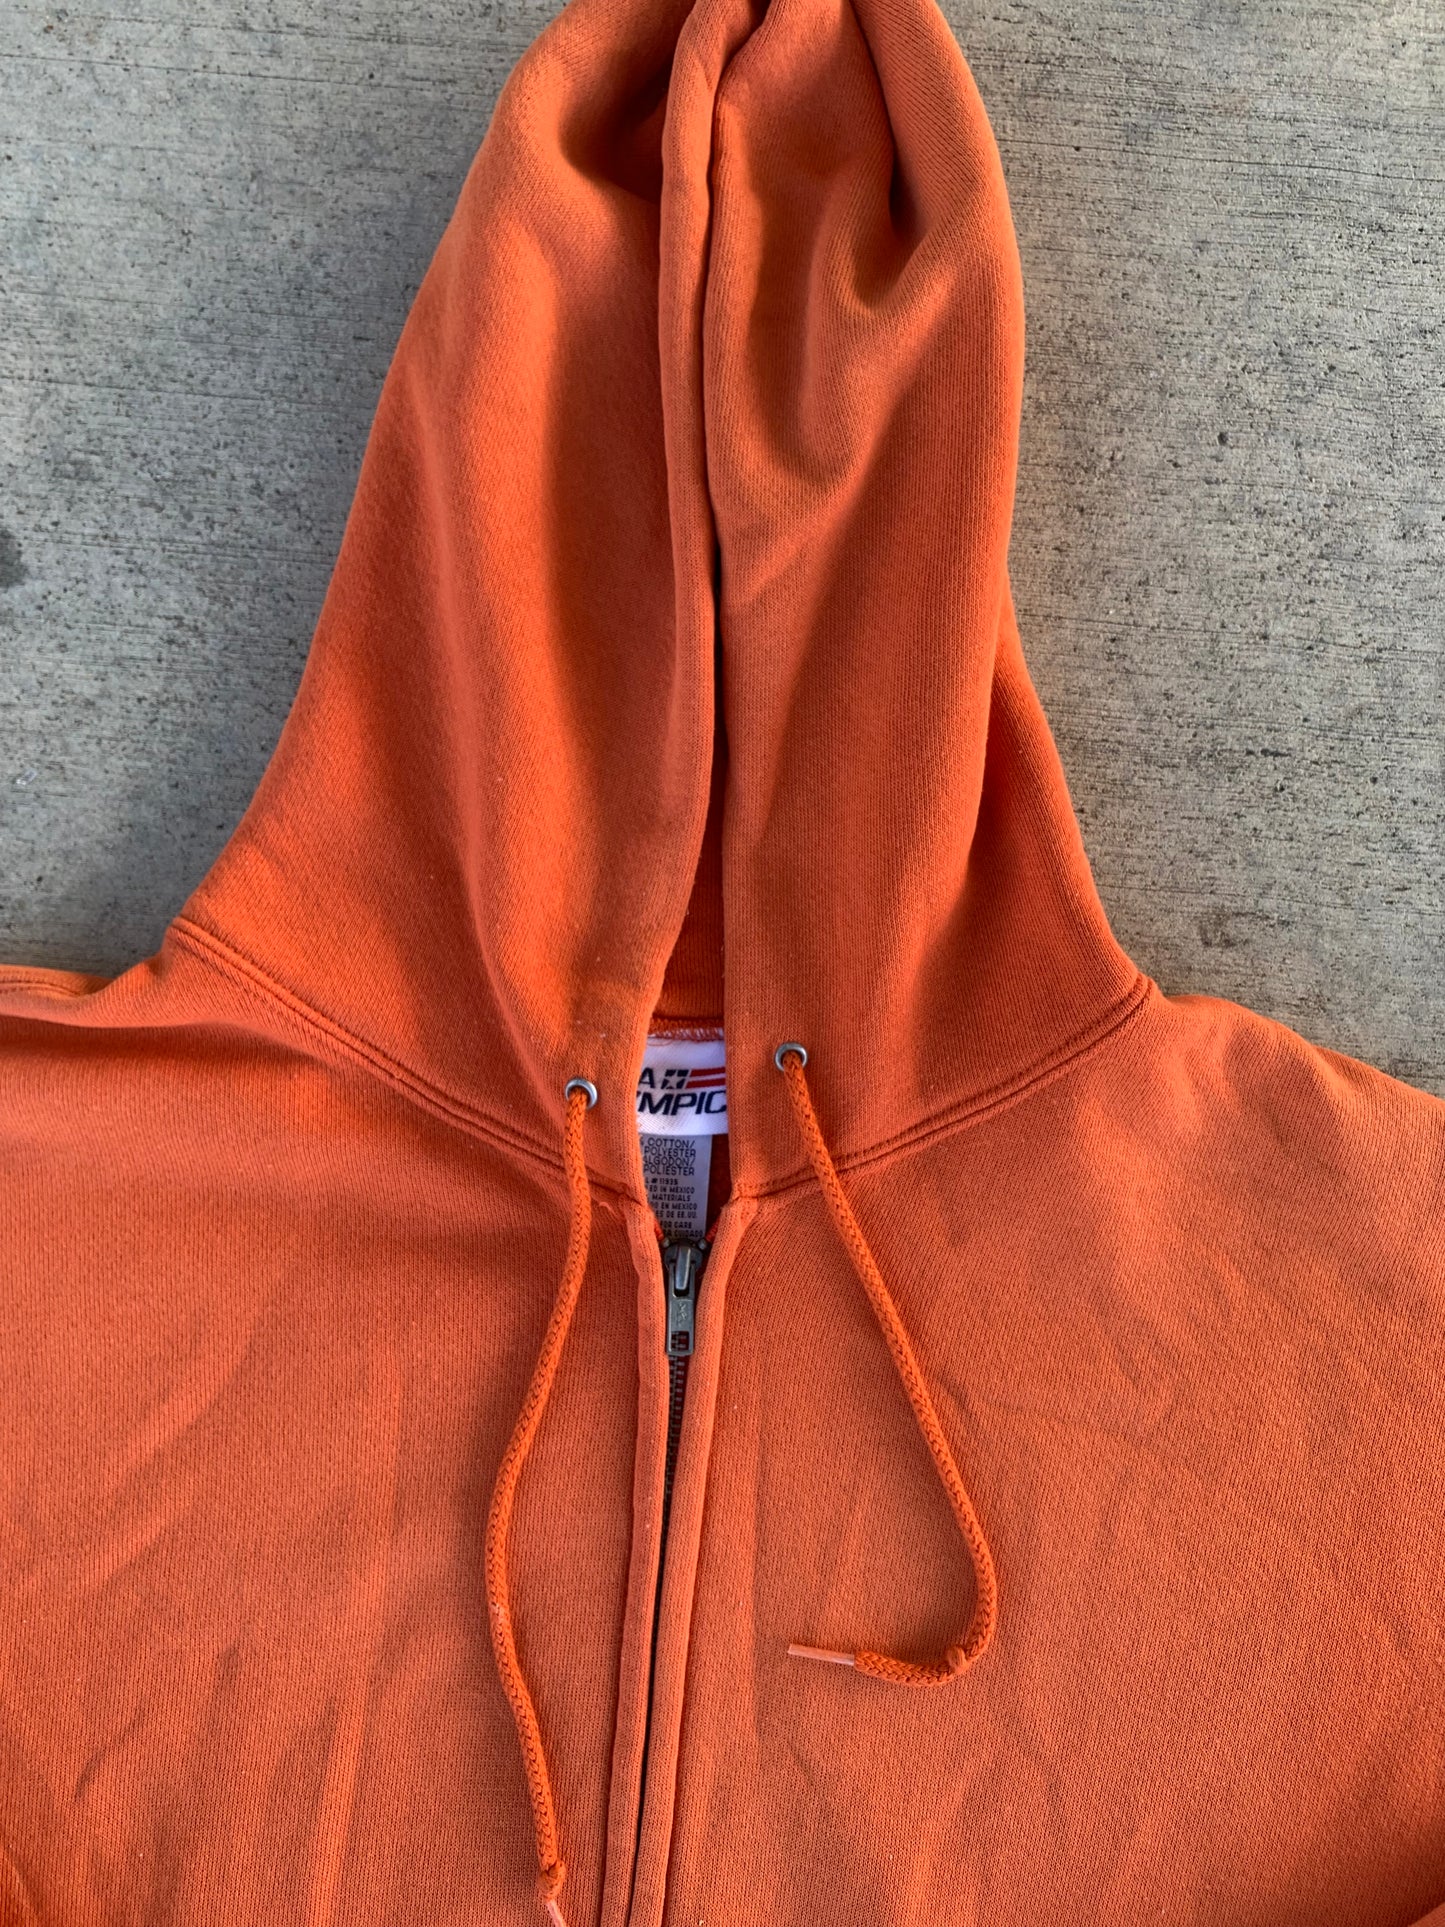 Orange Zip-Up Jacket